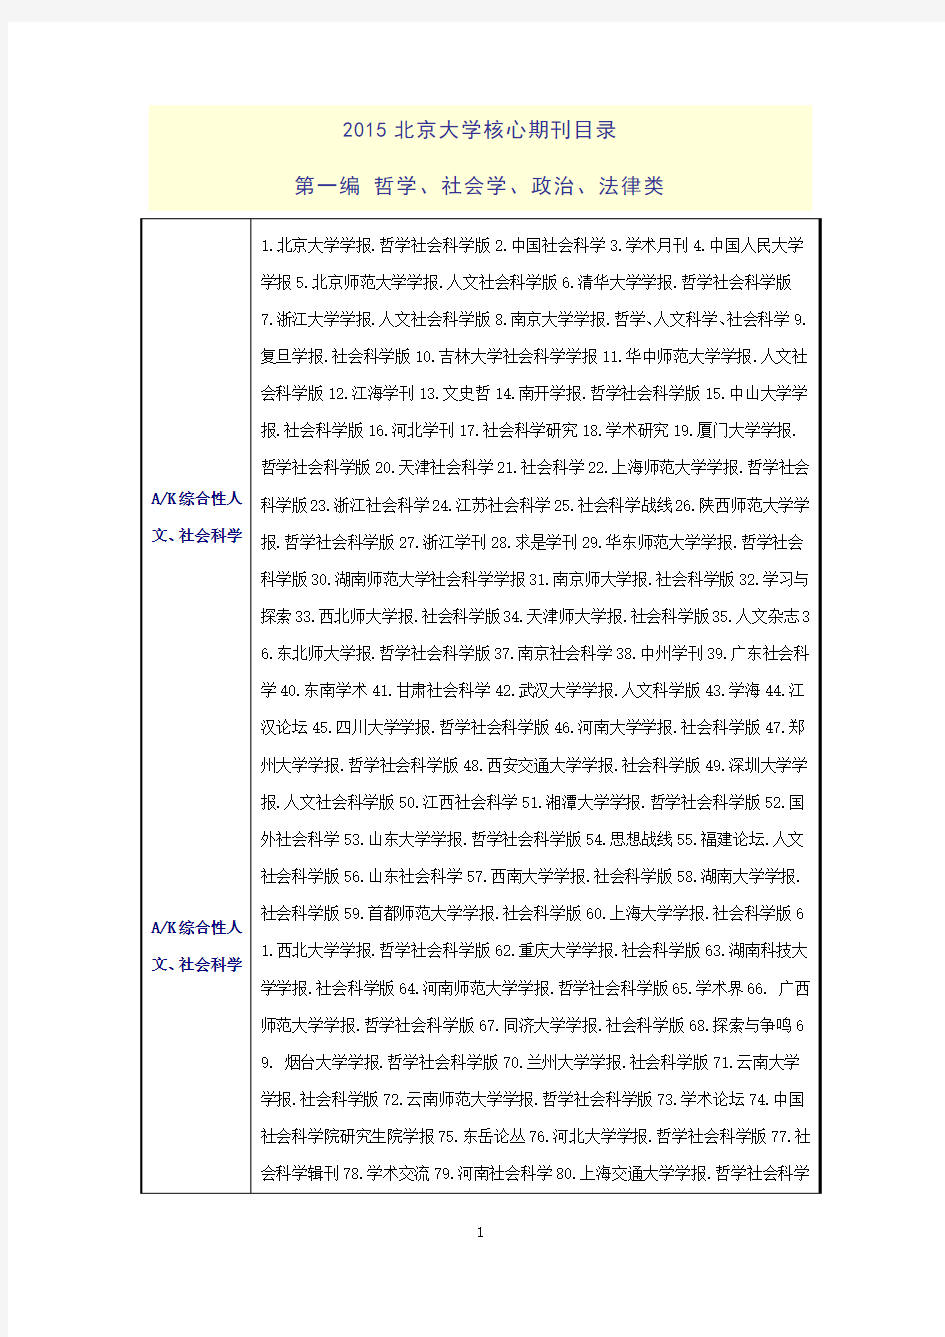 北大2015年版《中文核心期刊要目总览》